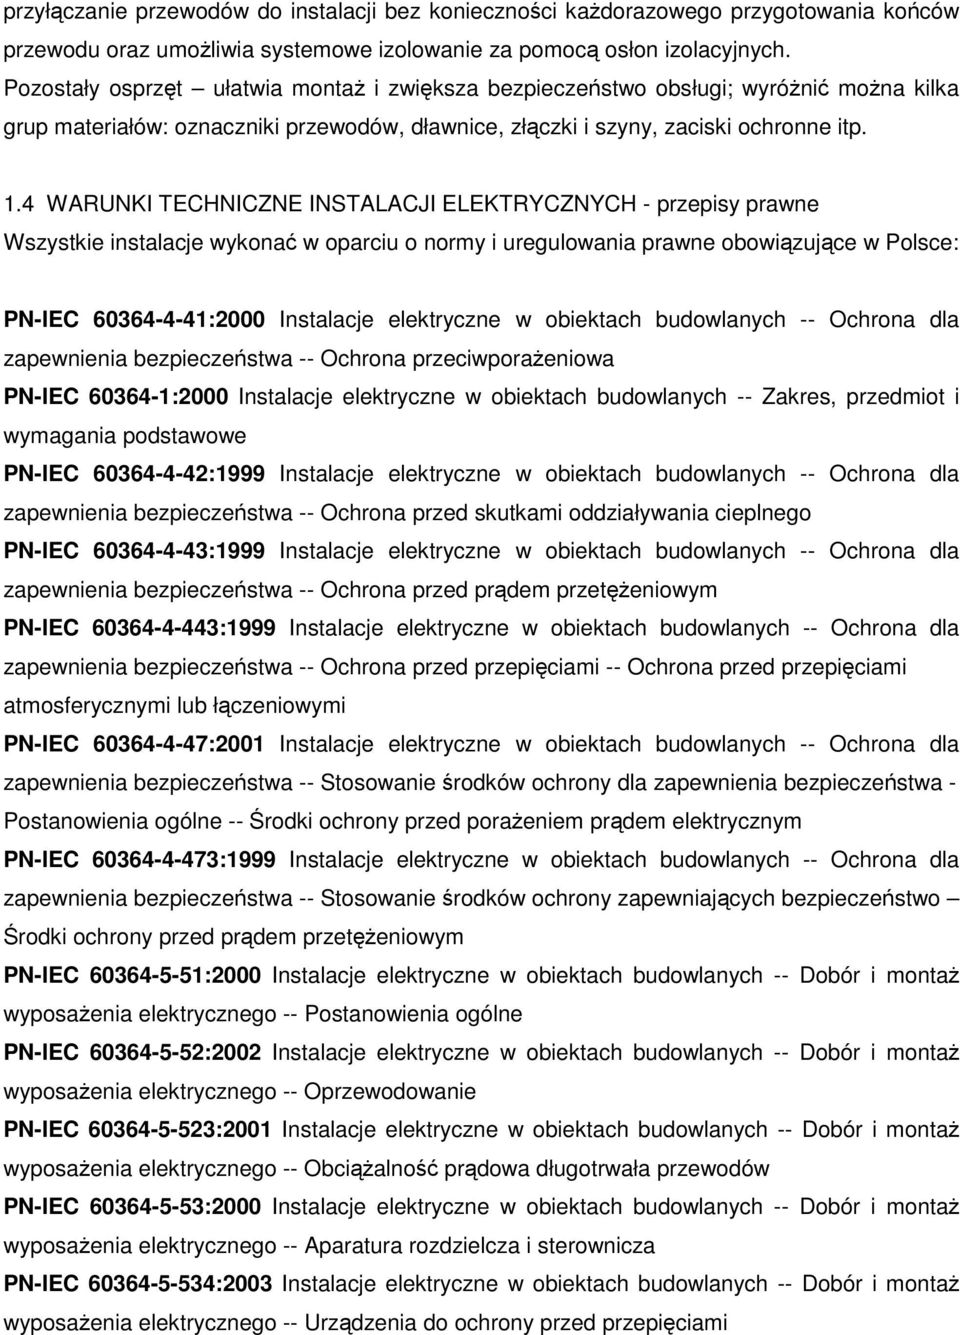 4 WARUNKI TECHNICZNE INSTALACJI ELEKTRYCZNYCH - przepisy prawne Wszystkie instalacje wykonać w oparciu o normy i uregulowania prawne obowiązujące w Polsce: PN-IEC 60364-4-41:2000 Instalacje